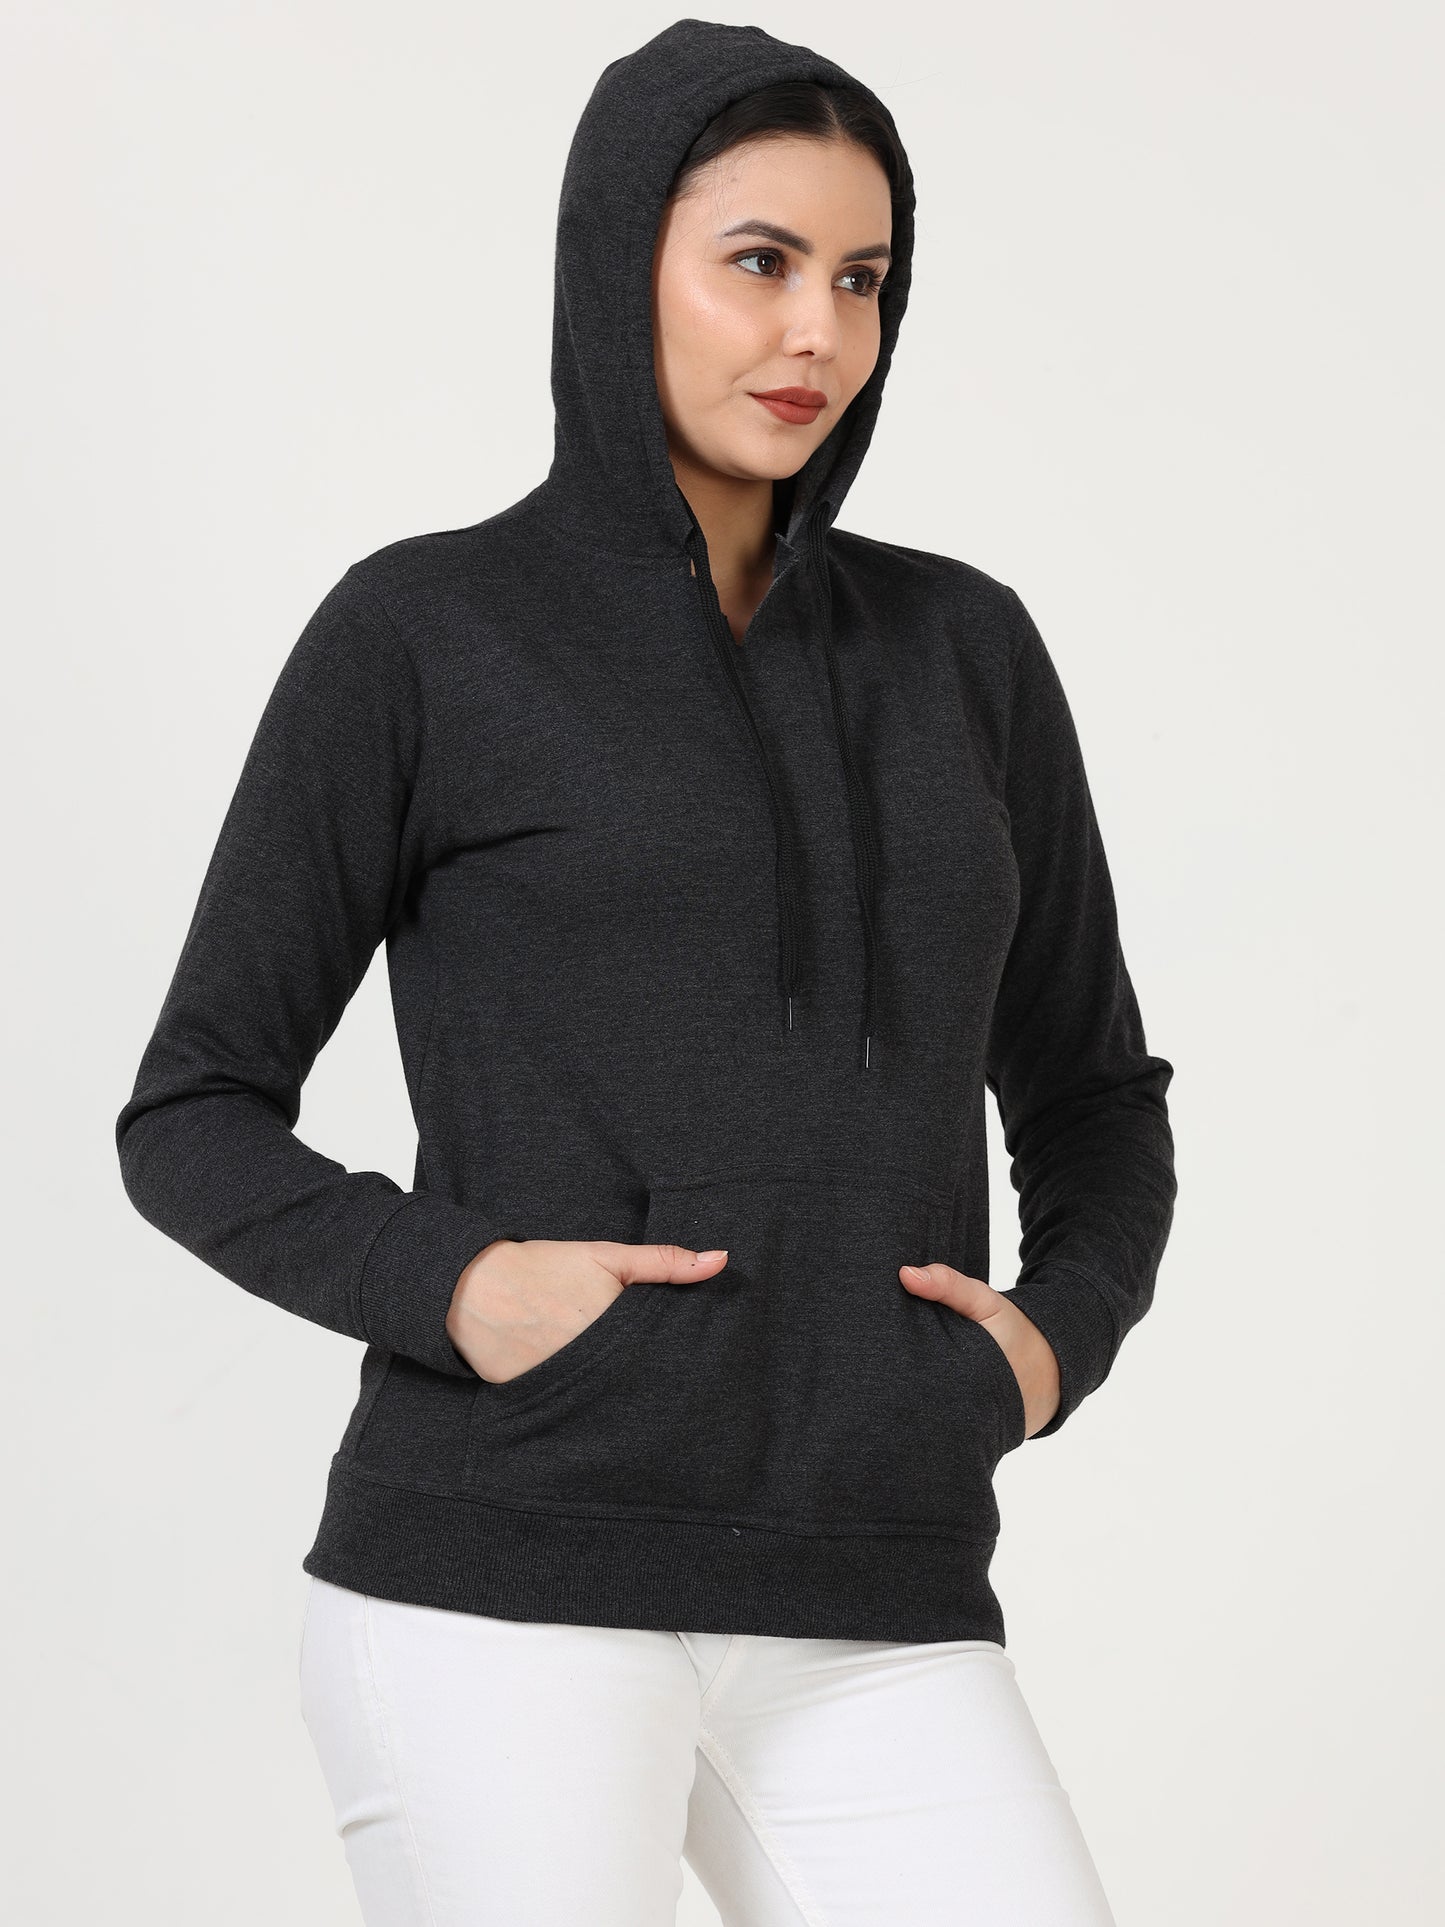 Women's Cotton Plain Charcoal Melange Color Sweatshirt Hoodies